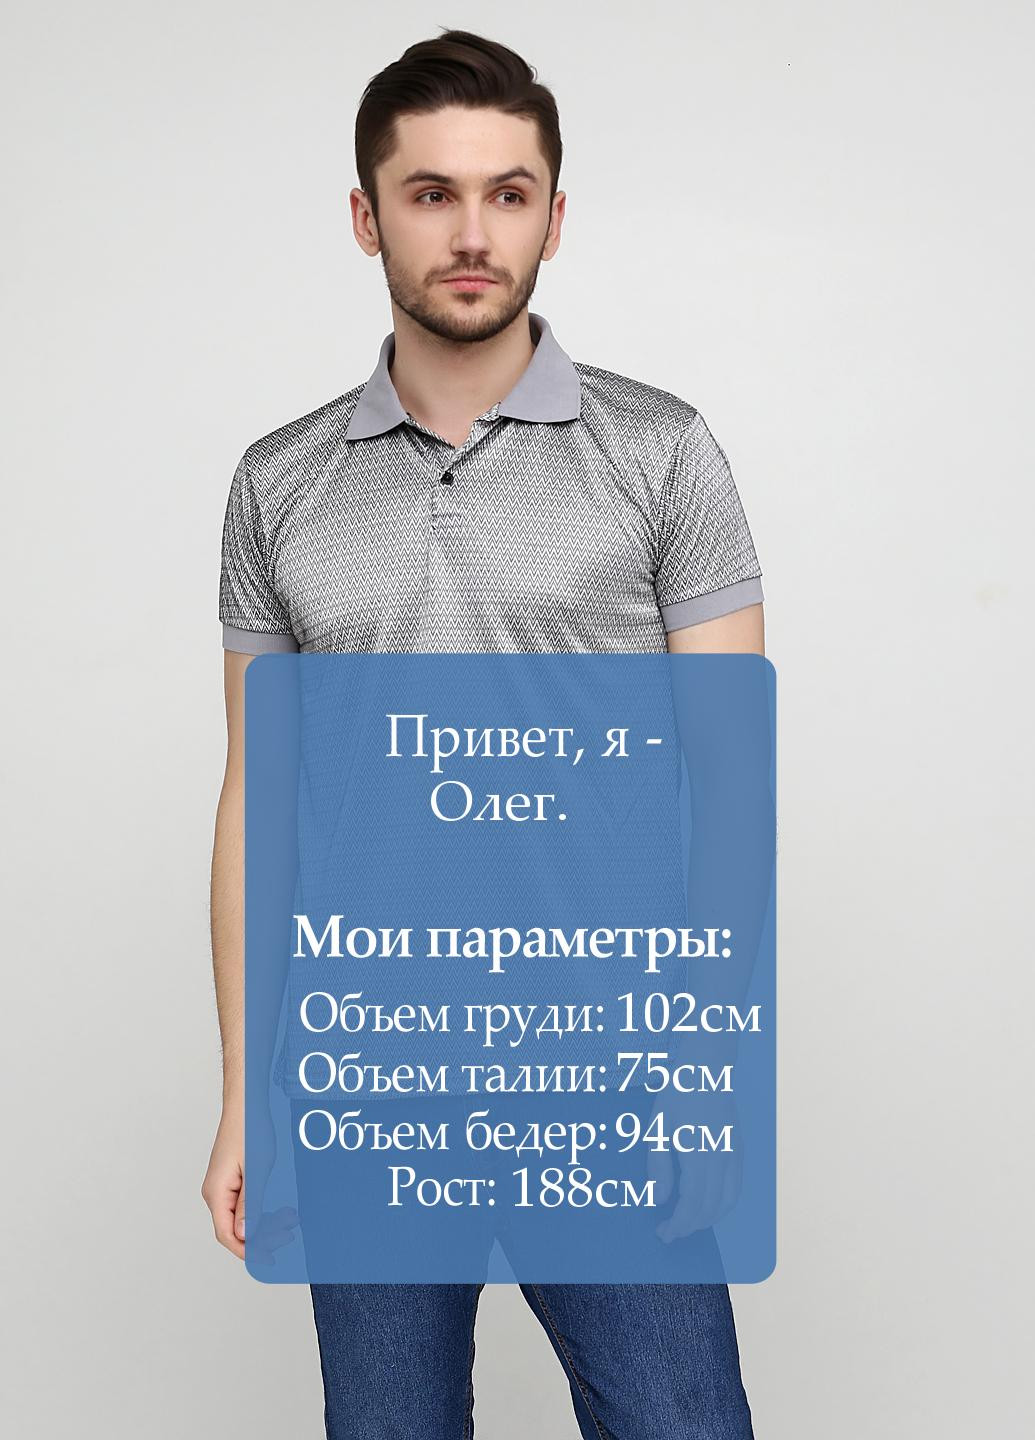 Серая футболка-поло для мужчин Chiarotex с геометрическим узором